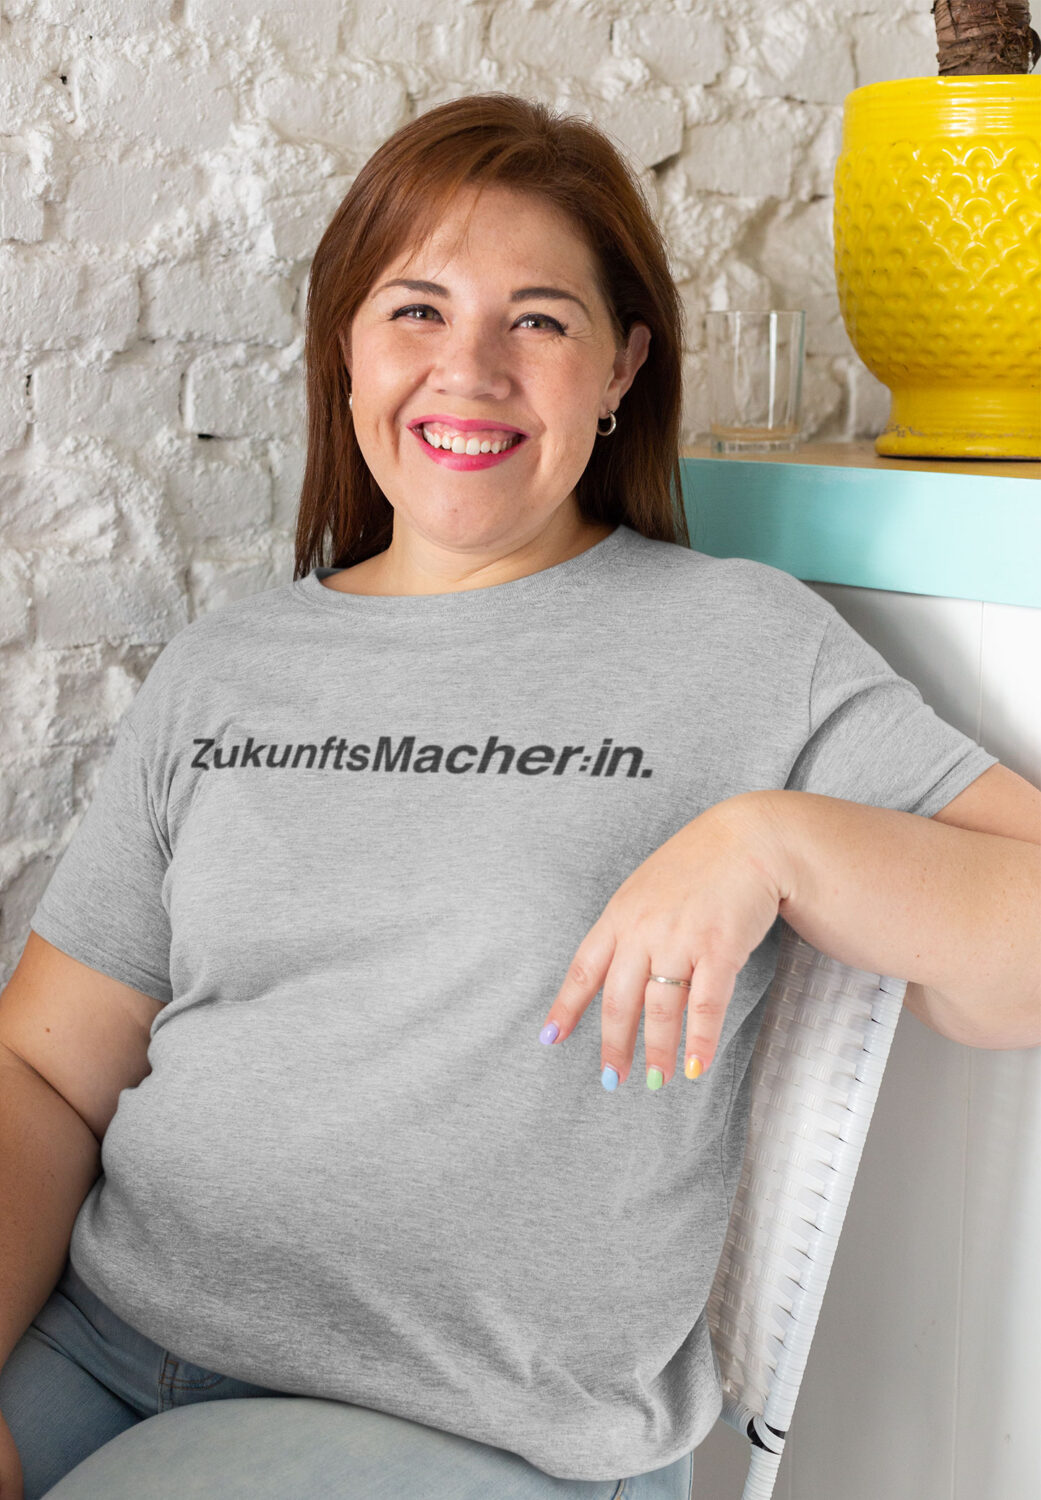 ZukunftsMacher_Frau-scaled ZukunftsMacher T-Shirts, Sweatshirts und Hoodies